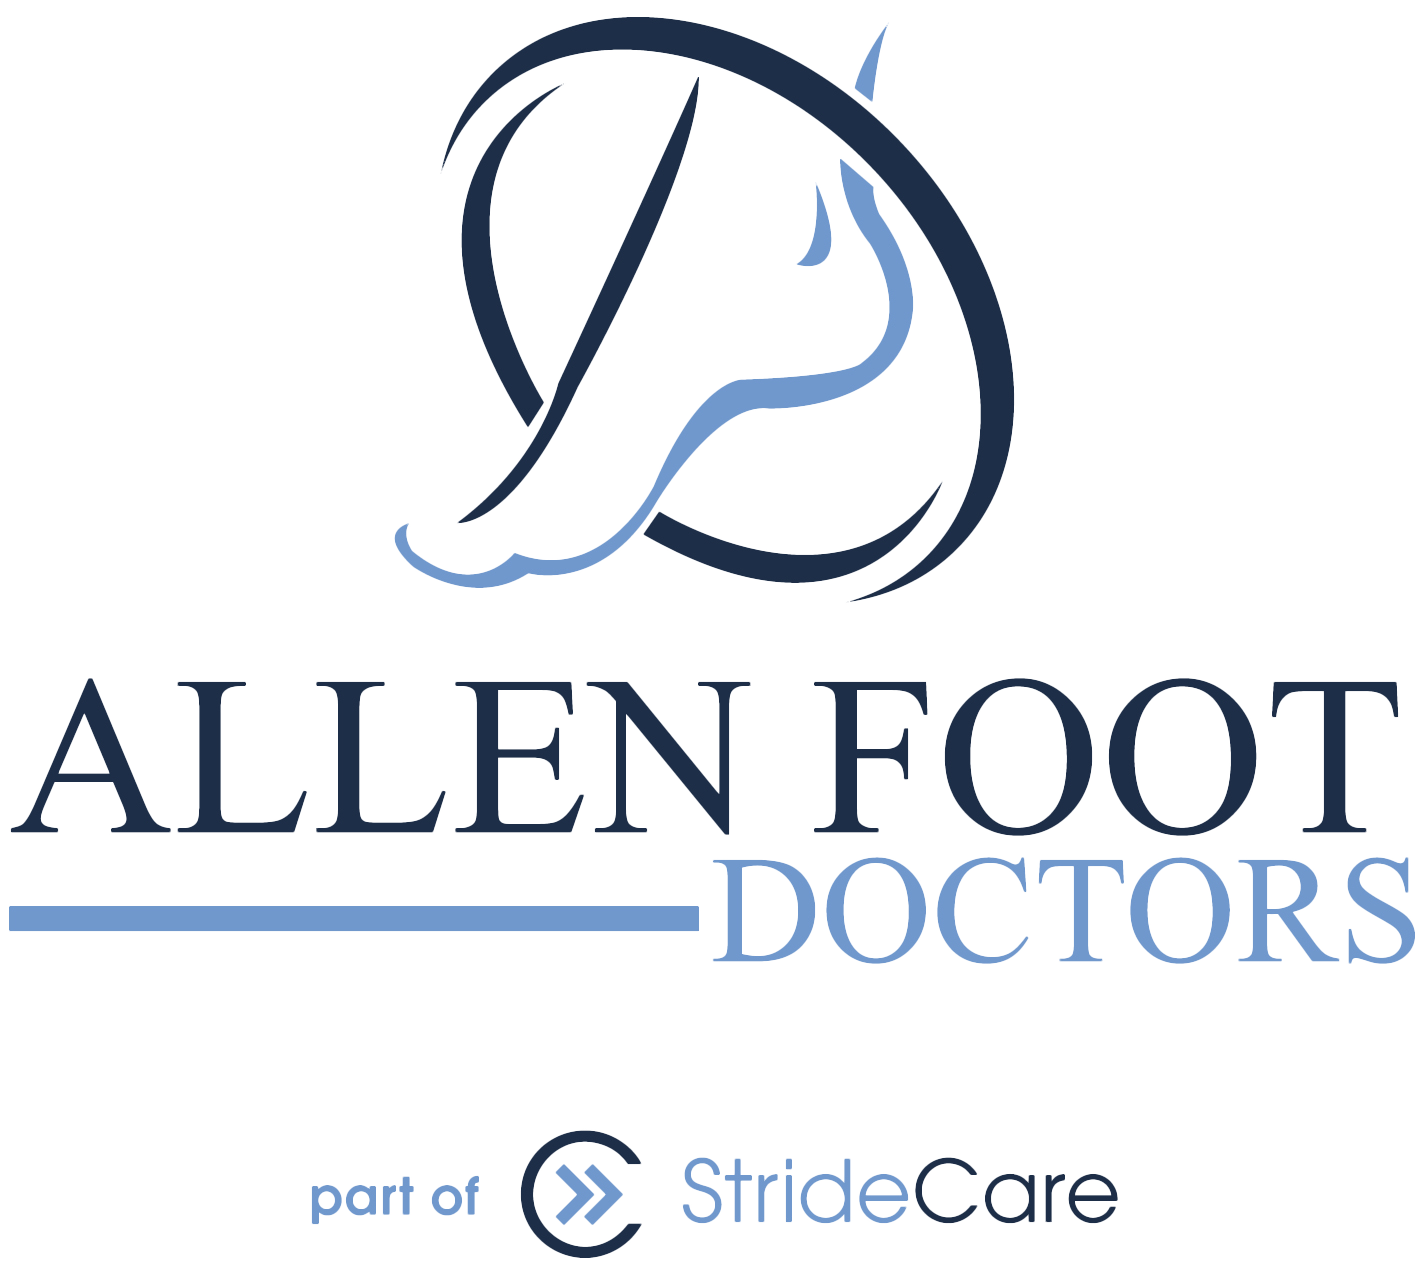 Allen Foot Doctors